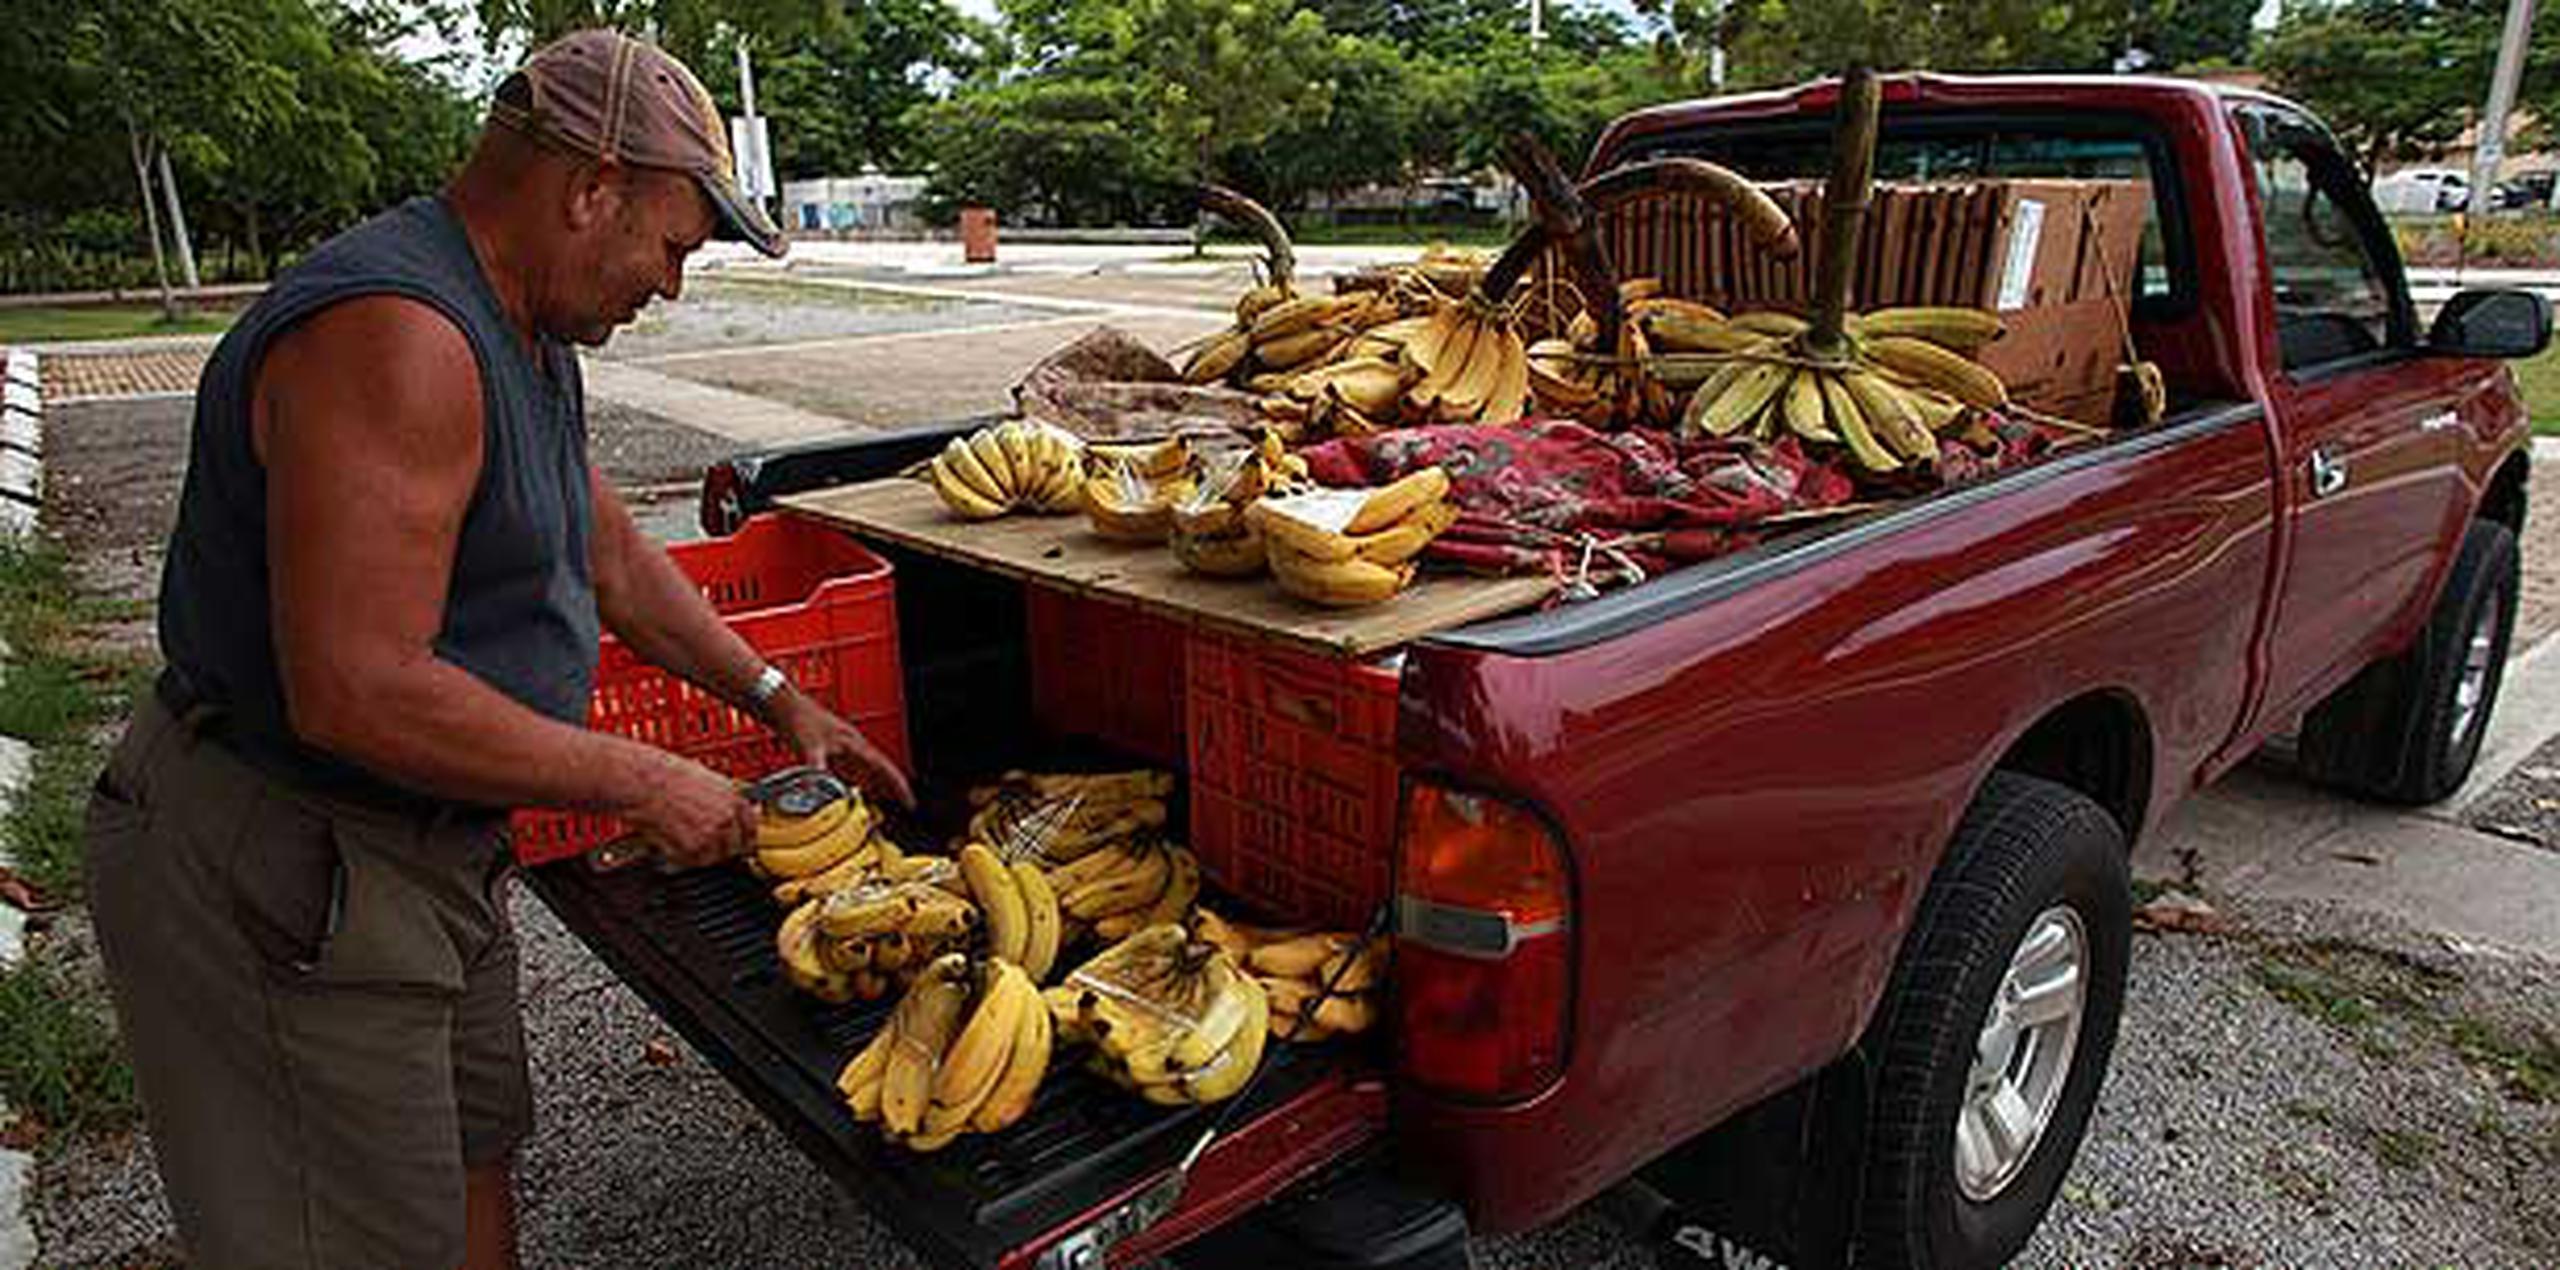 Alvino Guilloty, un vendedor de verduras de Maricao, dijo que había “bajado” a las 2:00 de la madrugada para el pueblo de Mayagüez, para hacer sus ventas de plátano en los semáforos como todos los días. (GFR Media/Olimpo Ramos)